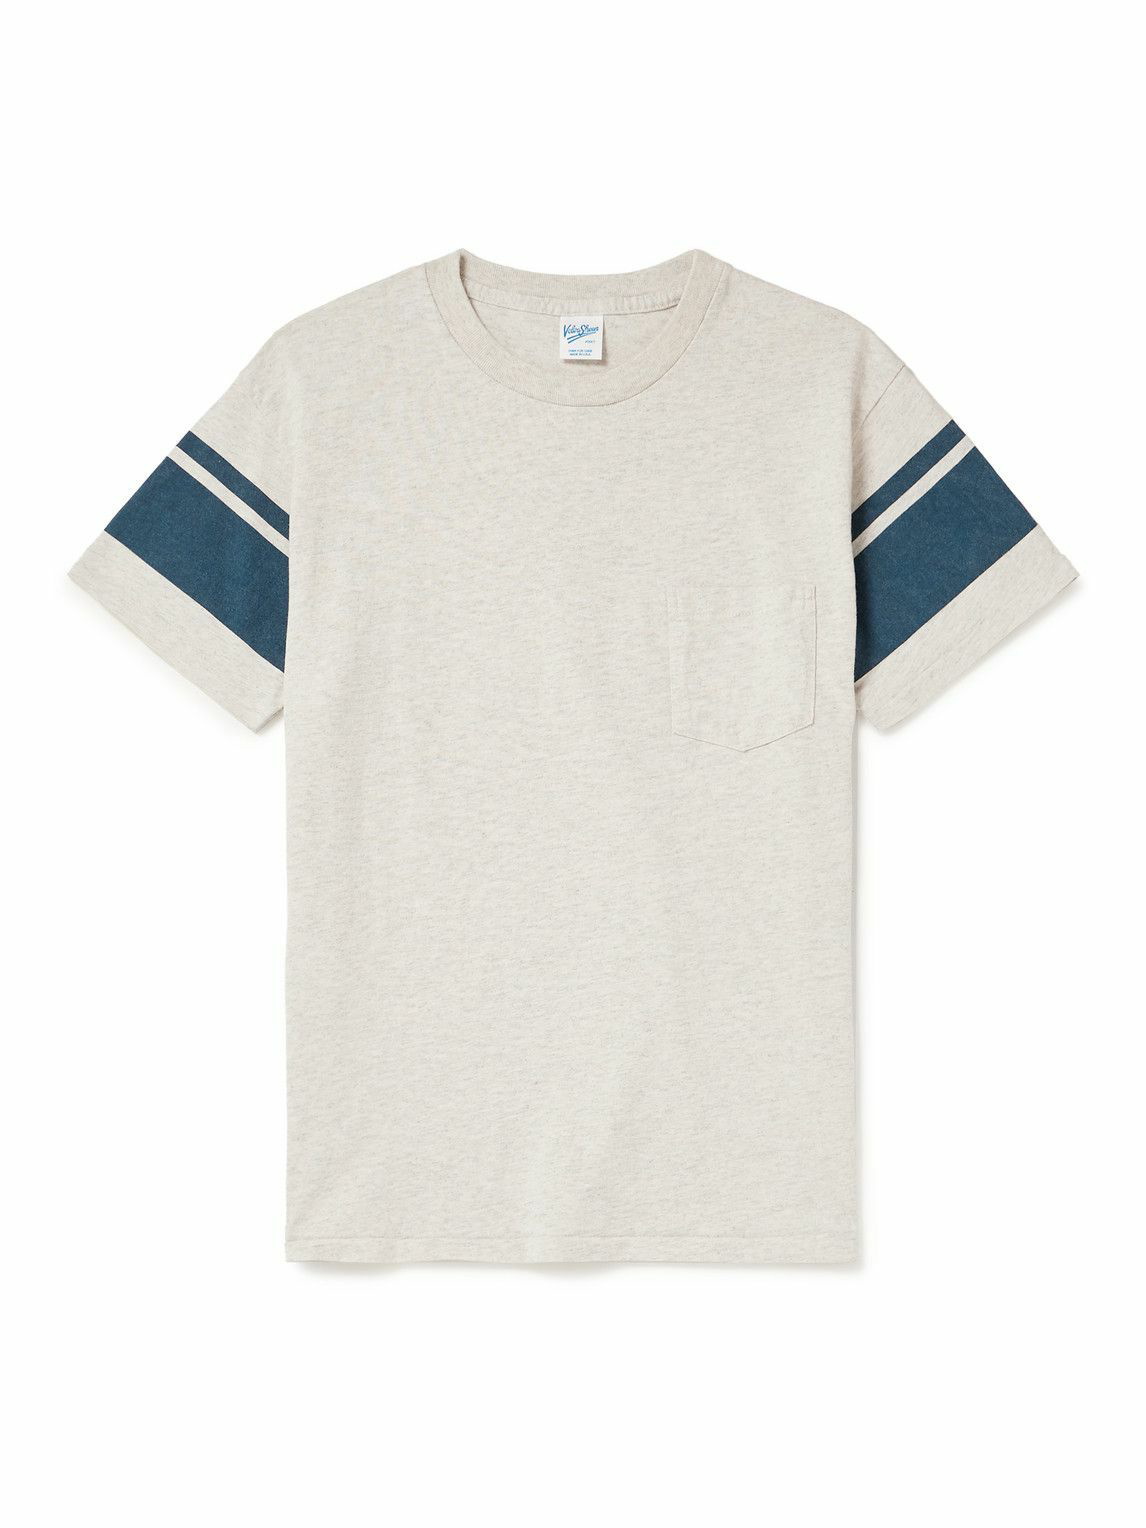 Photo: Velva Sheen - College Arm Cotton-blend Jersey T-Shirt - Gray